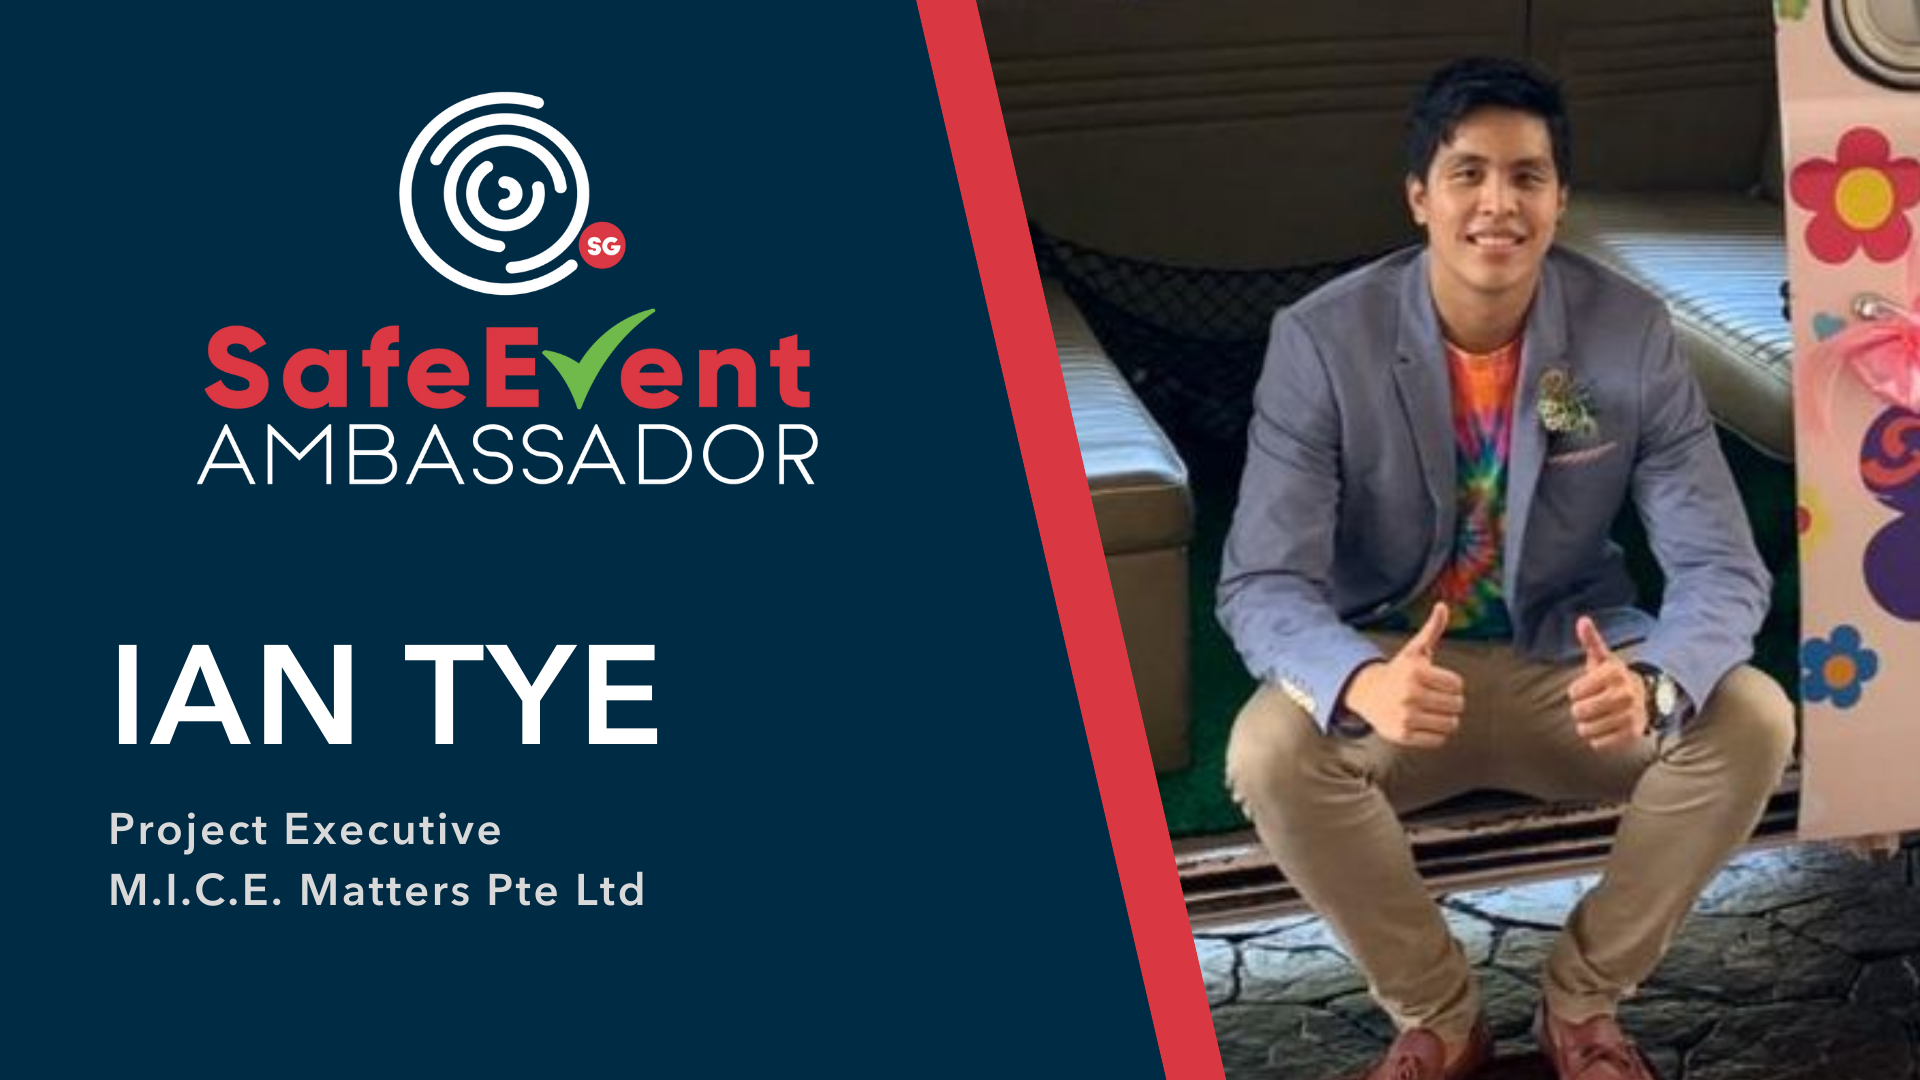 SG SafeEvent Ambassador Spotlight: Ian Tye, Project Executive of M.I.C.E. Matters Pte Ltd